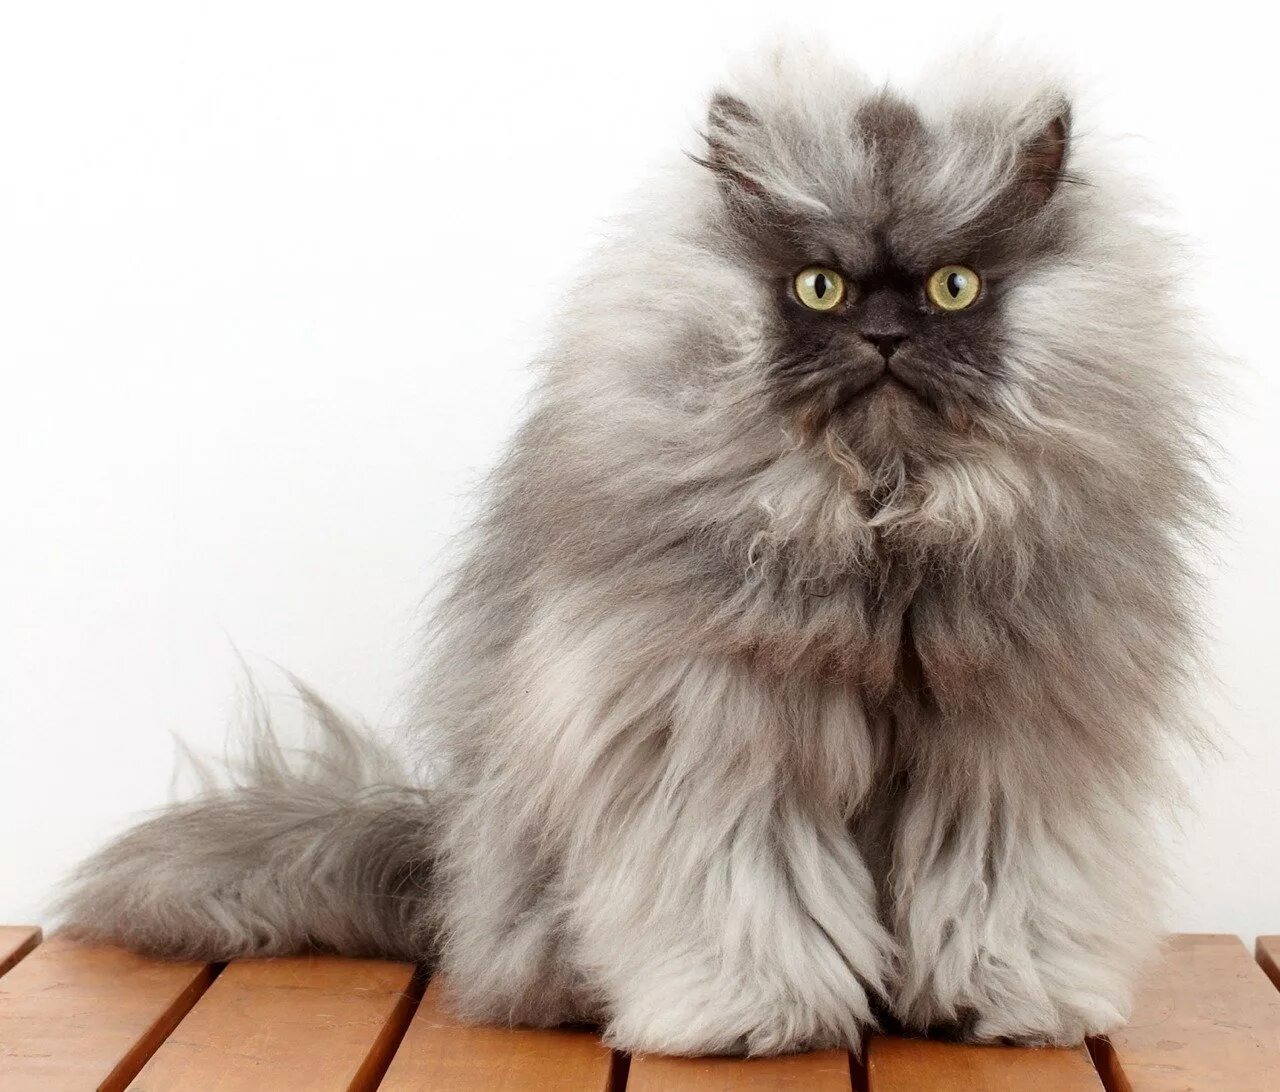 Британская длинношёрстная кошка. Гималайская кошка длинношерстная. Персидская длинношерстная кошка Джуно. Персидская длинношерстная шиншилла. Лохматой шерсти